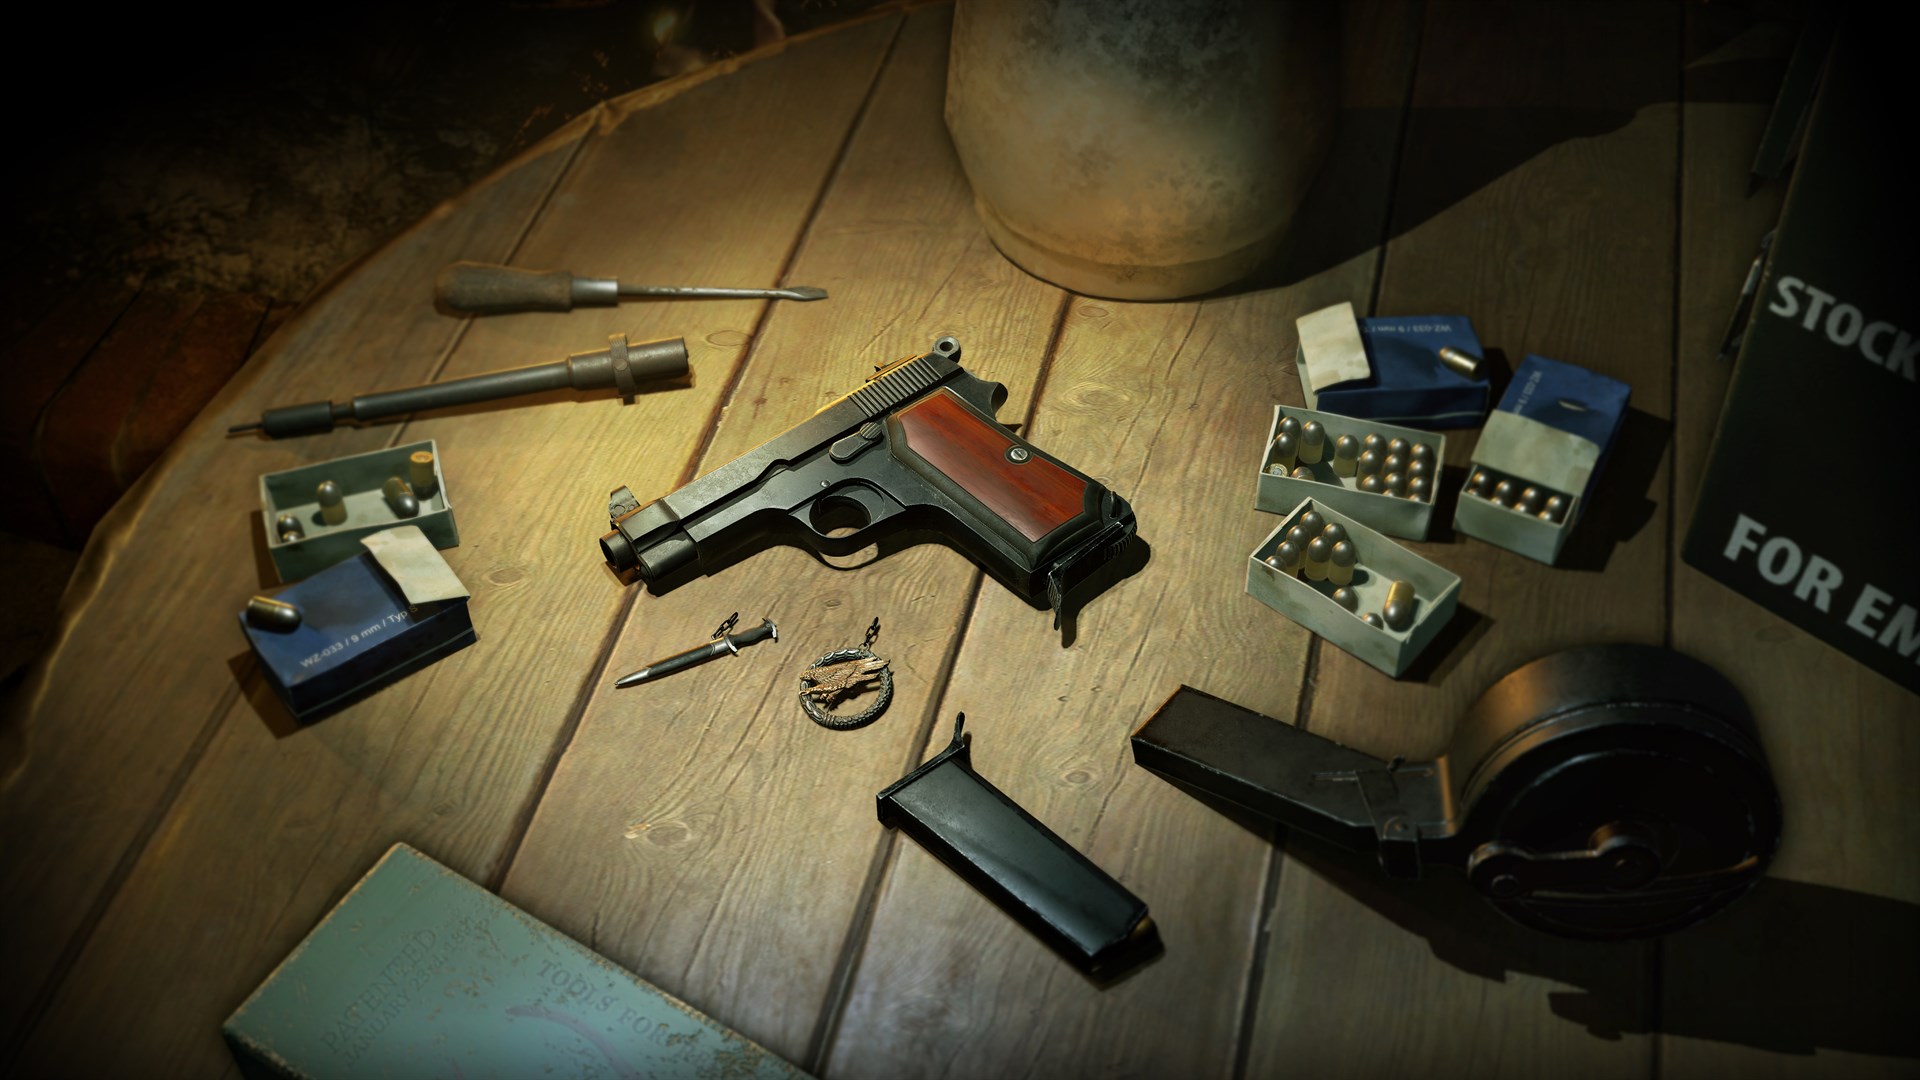 Zombie Army 4: M1934 Pistol Bundle